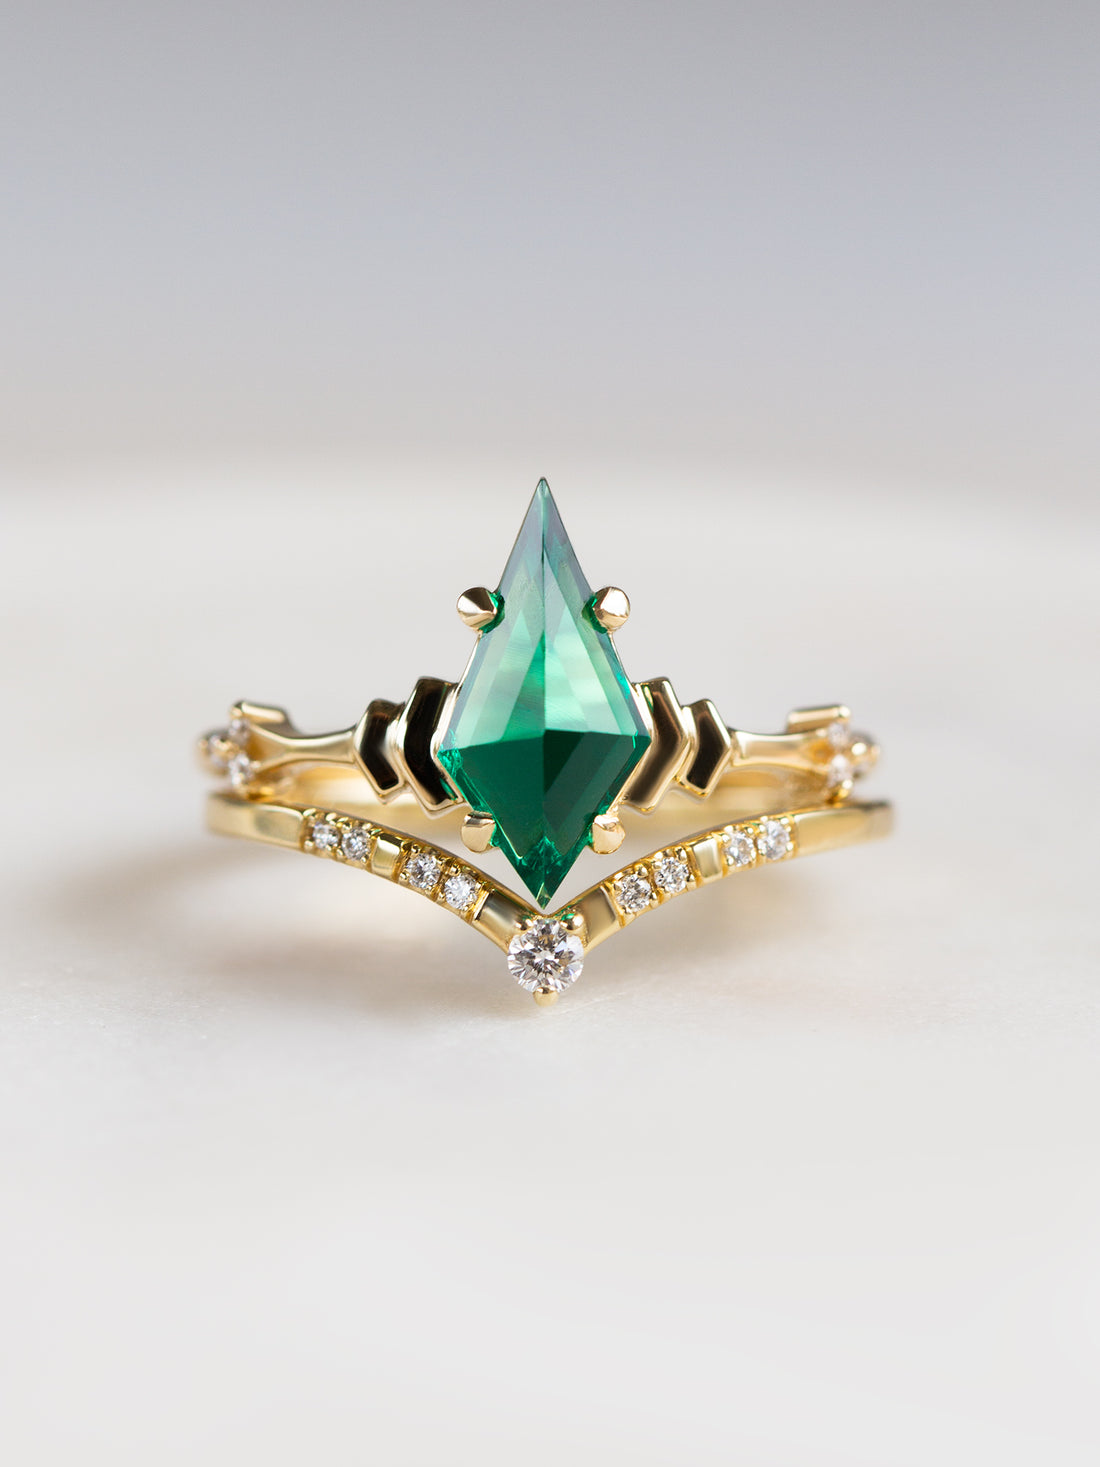 hiddenspace-engagementring-emerald-kitedoric-ring-proposal-ring7